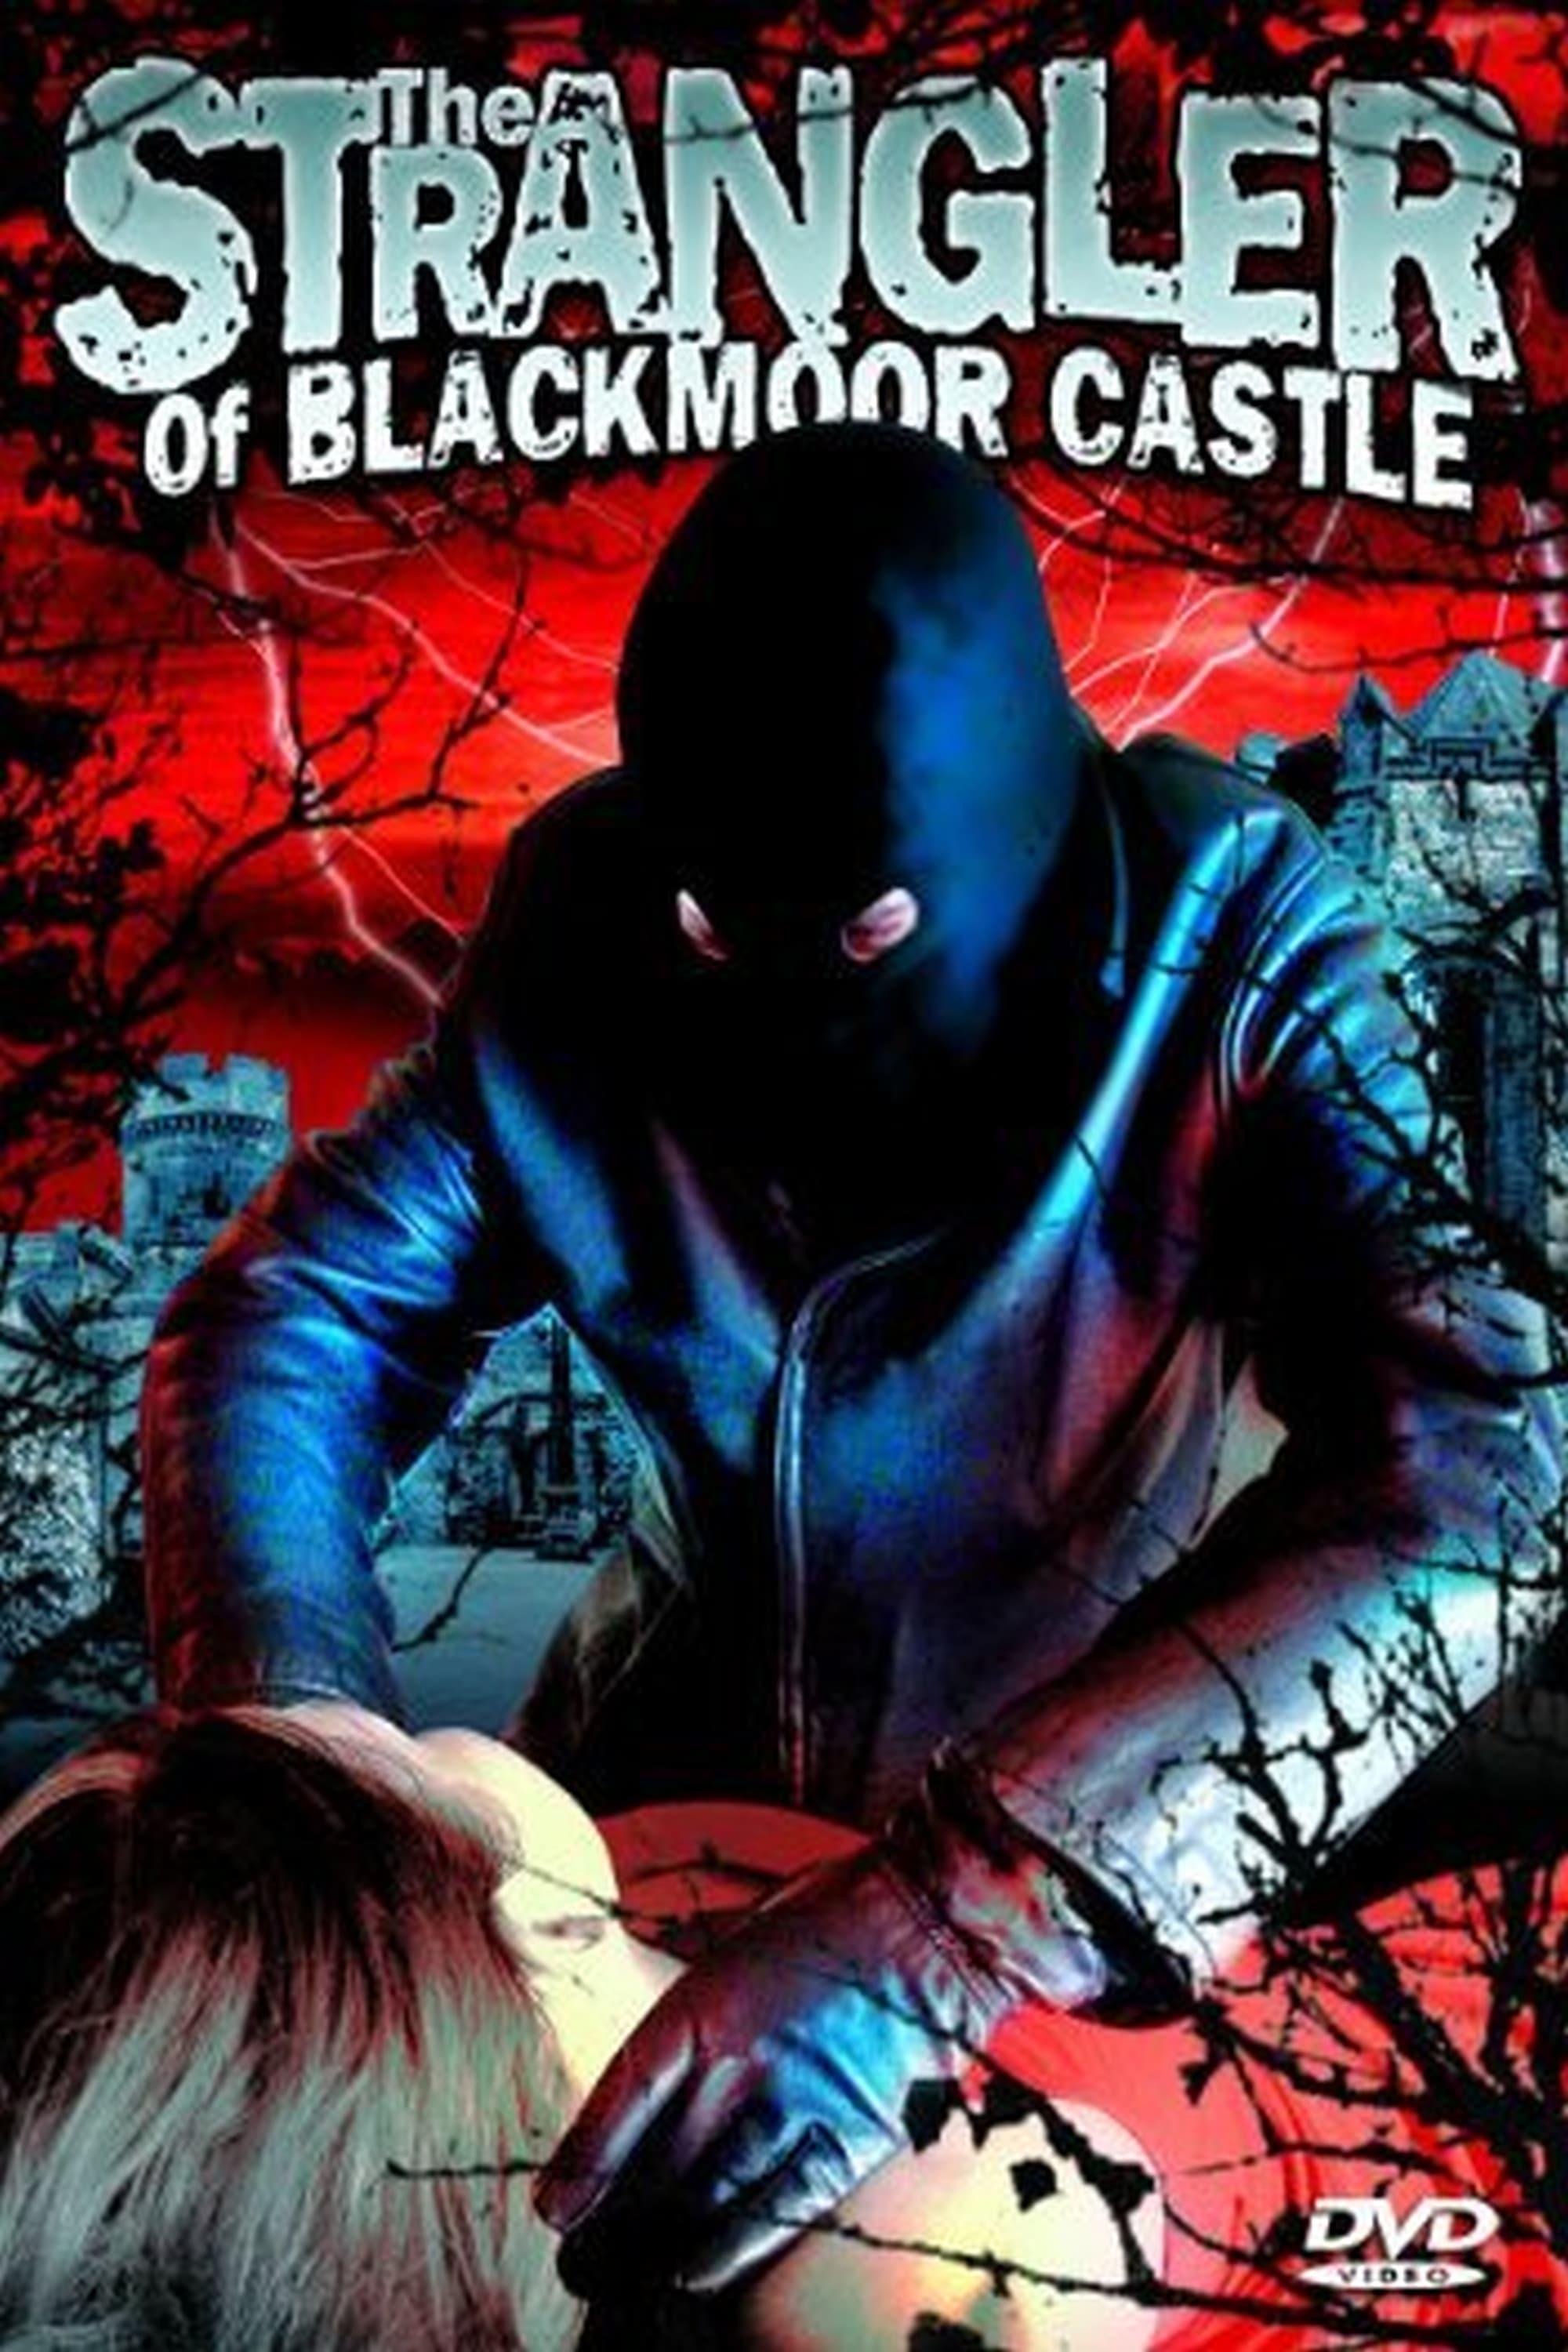 The Strangler of Blackmoor Castle poster